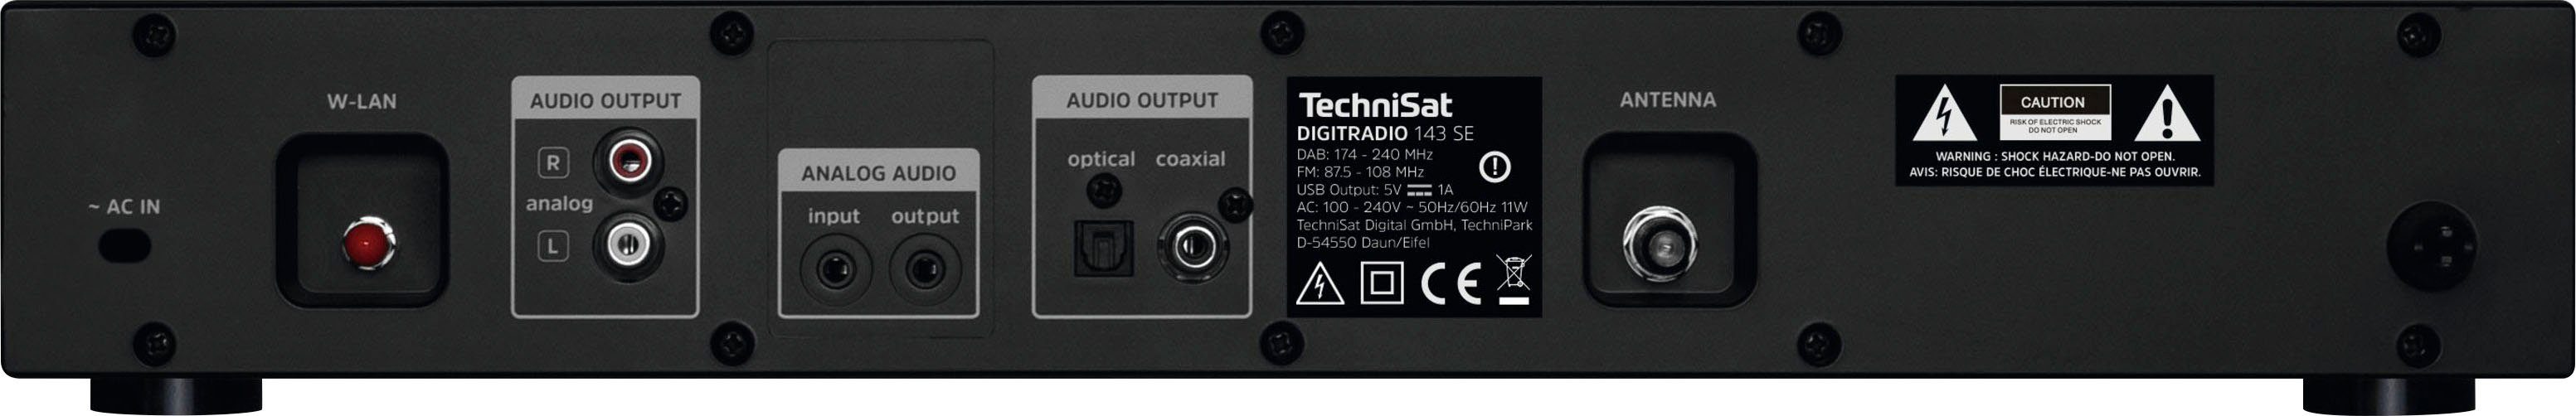 TechniSat (V3) FM-Tuner Internet-Radio (Digitalradio RDS, mit DIGITRADIO (DAB), Internetradio) 143